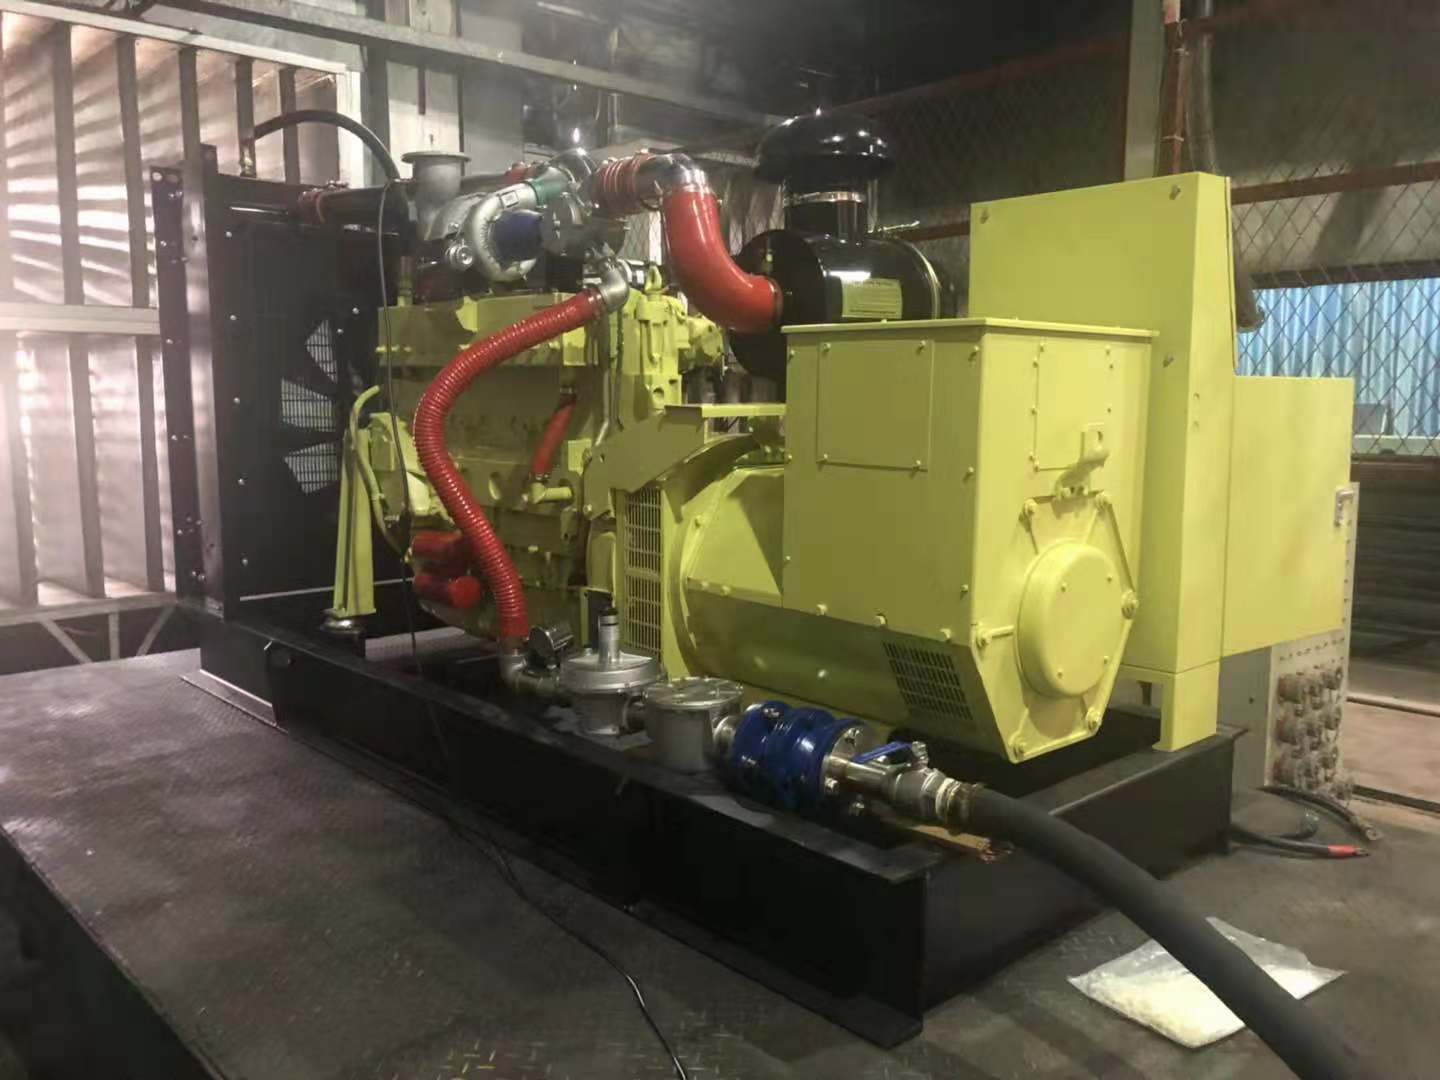 biogas generator